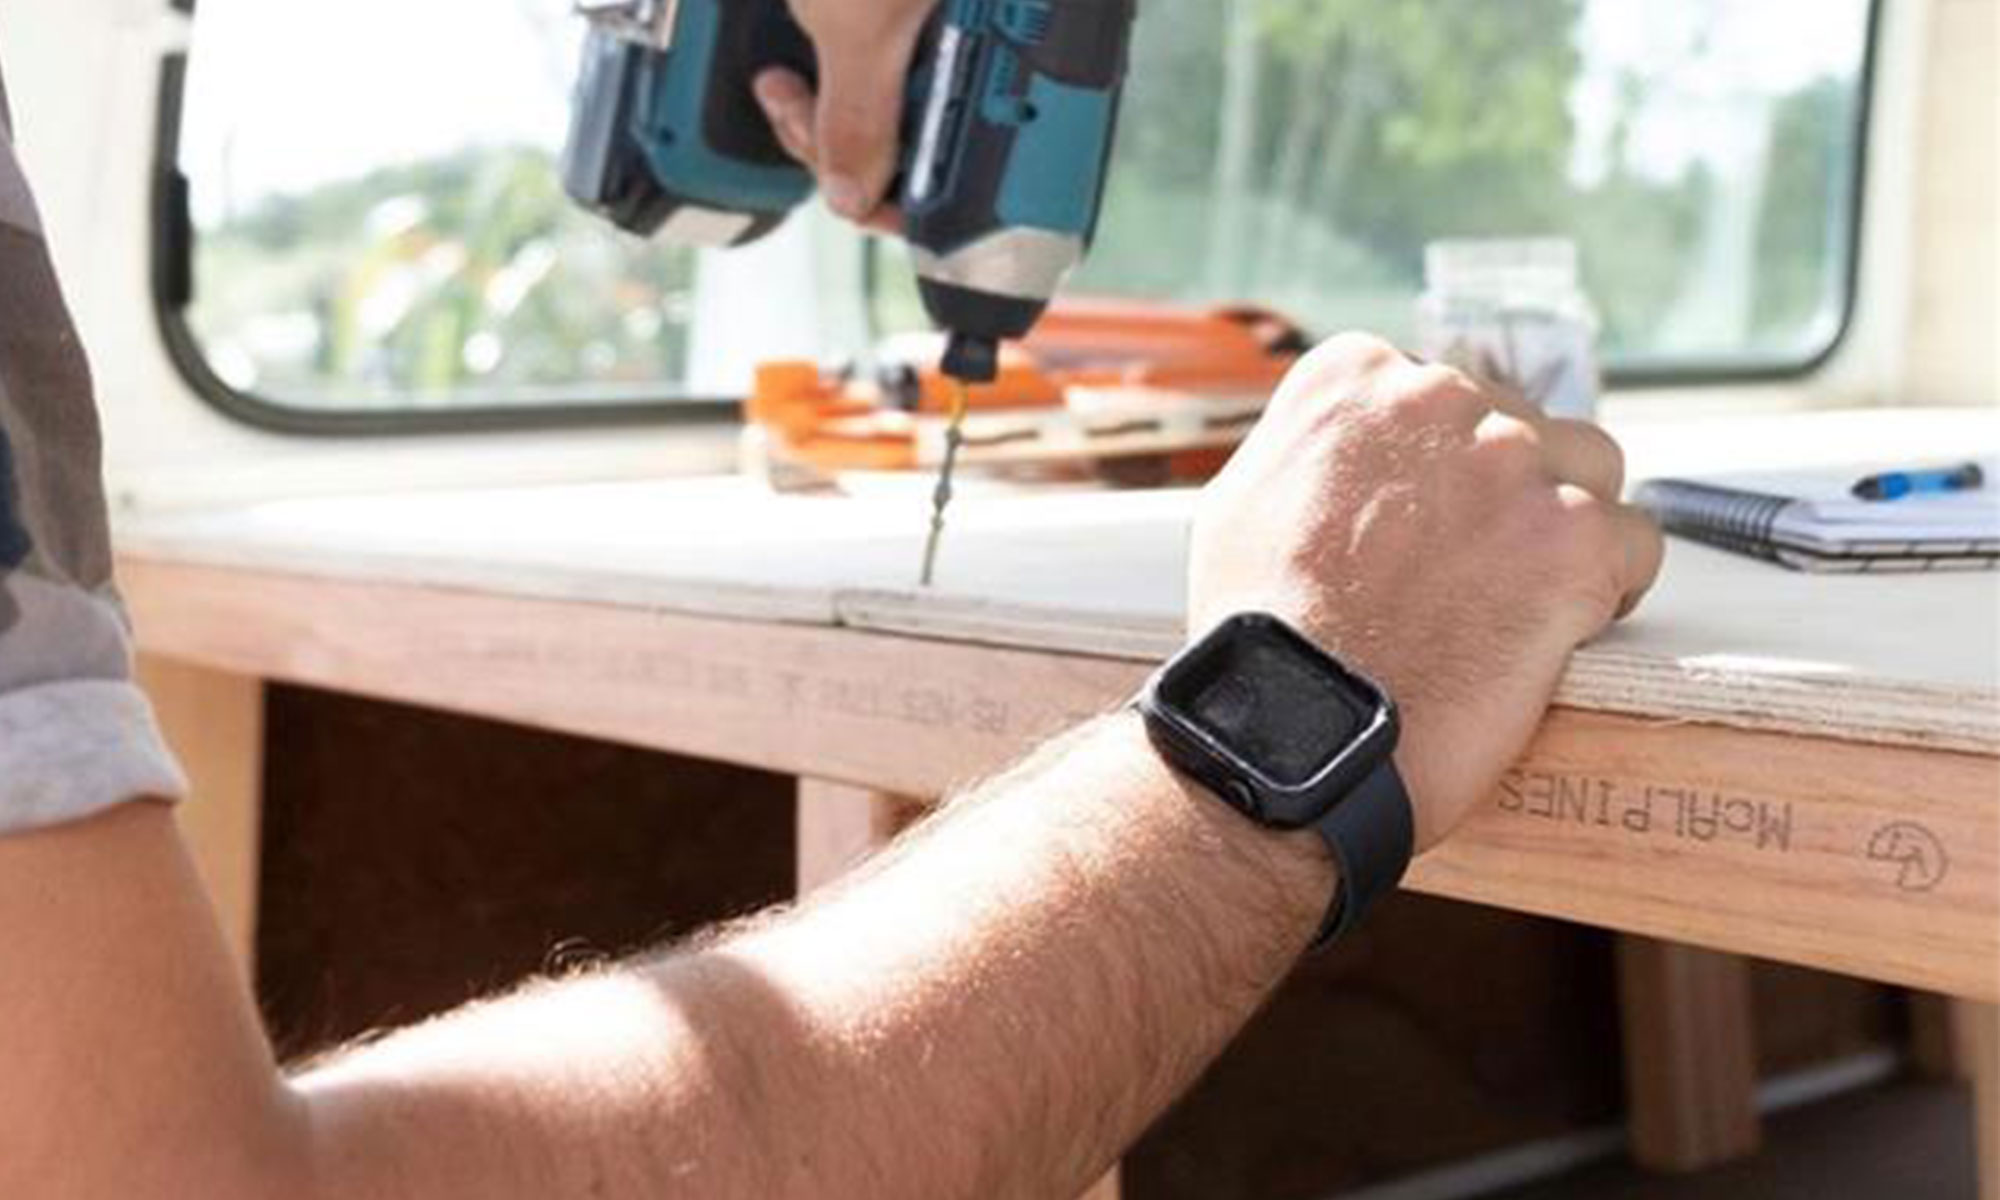 全米no 1の耐衝撃ケース Otterbox のapple Watchケースが登場 Apple Watchをオシャレに守る スマートウォッチライフ